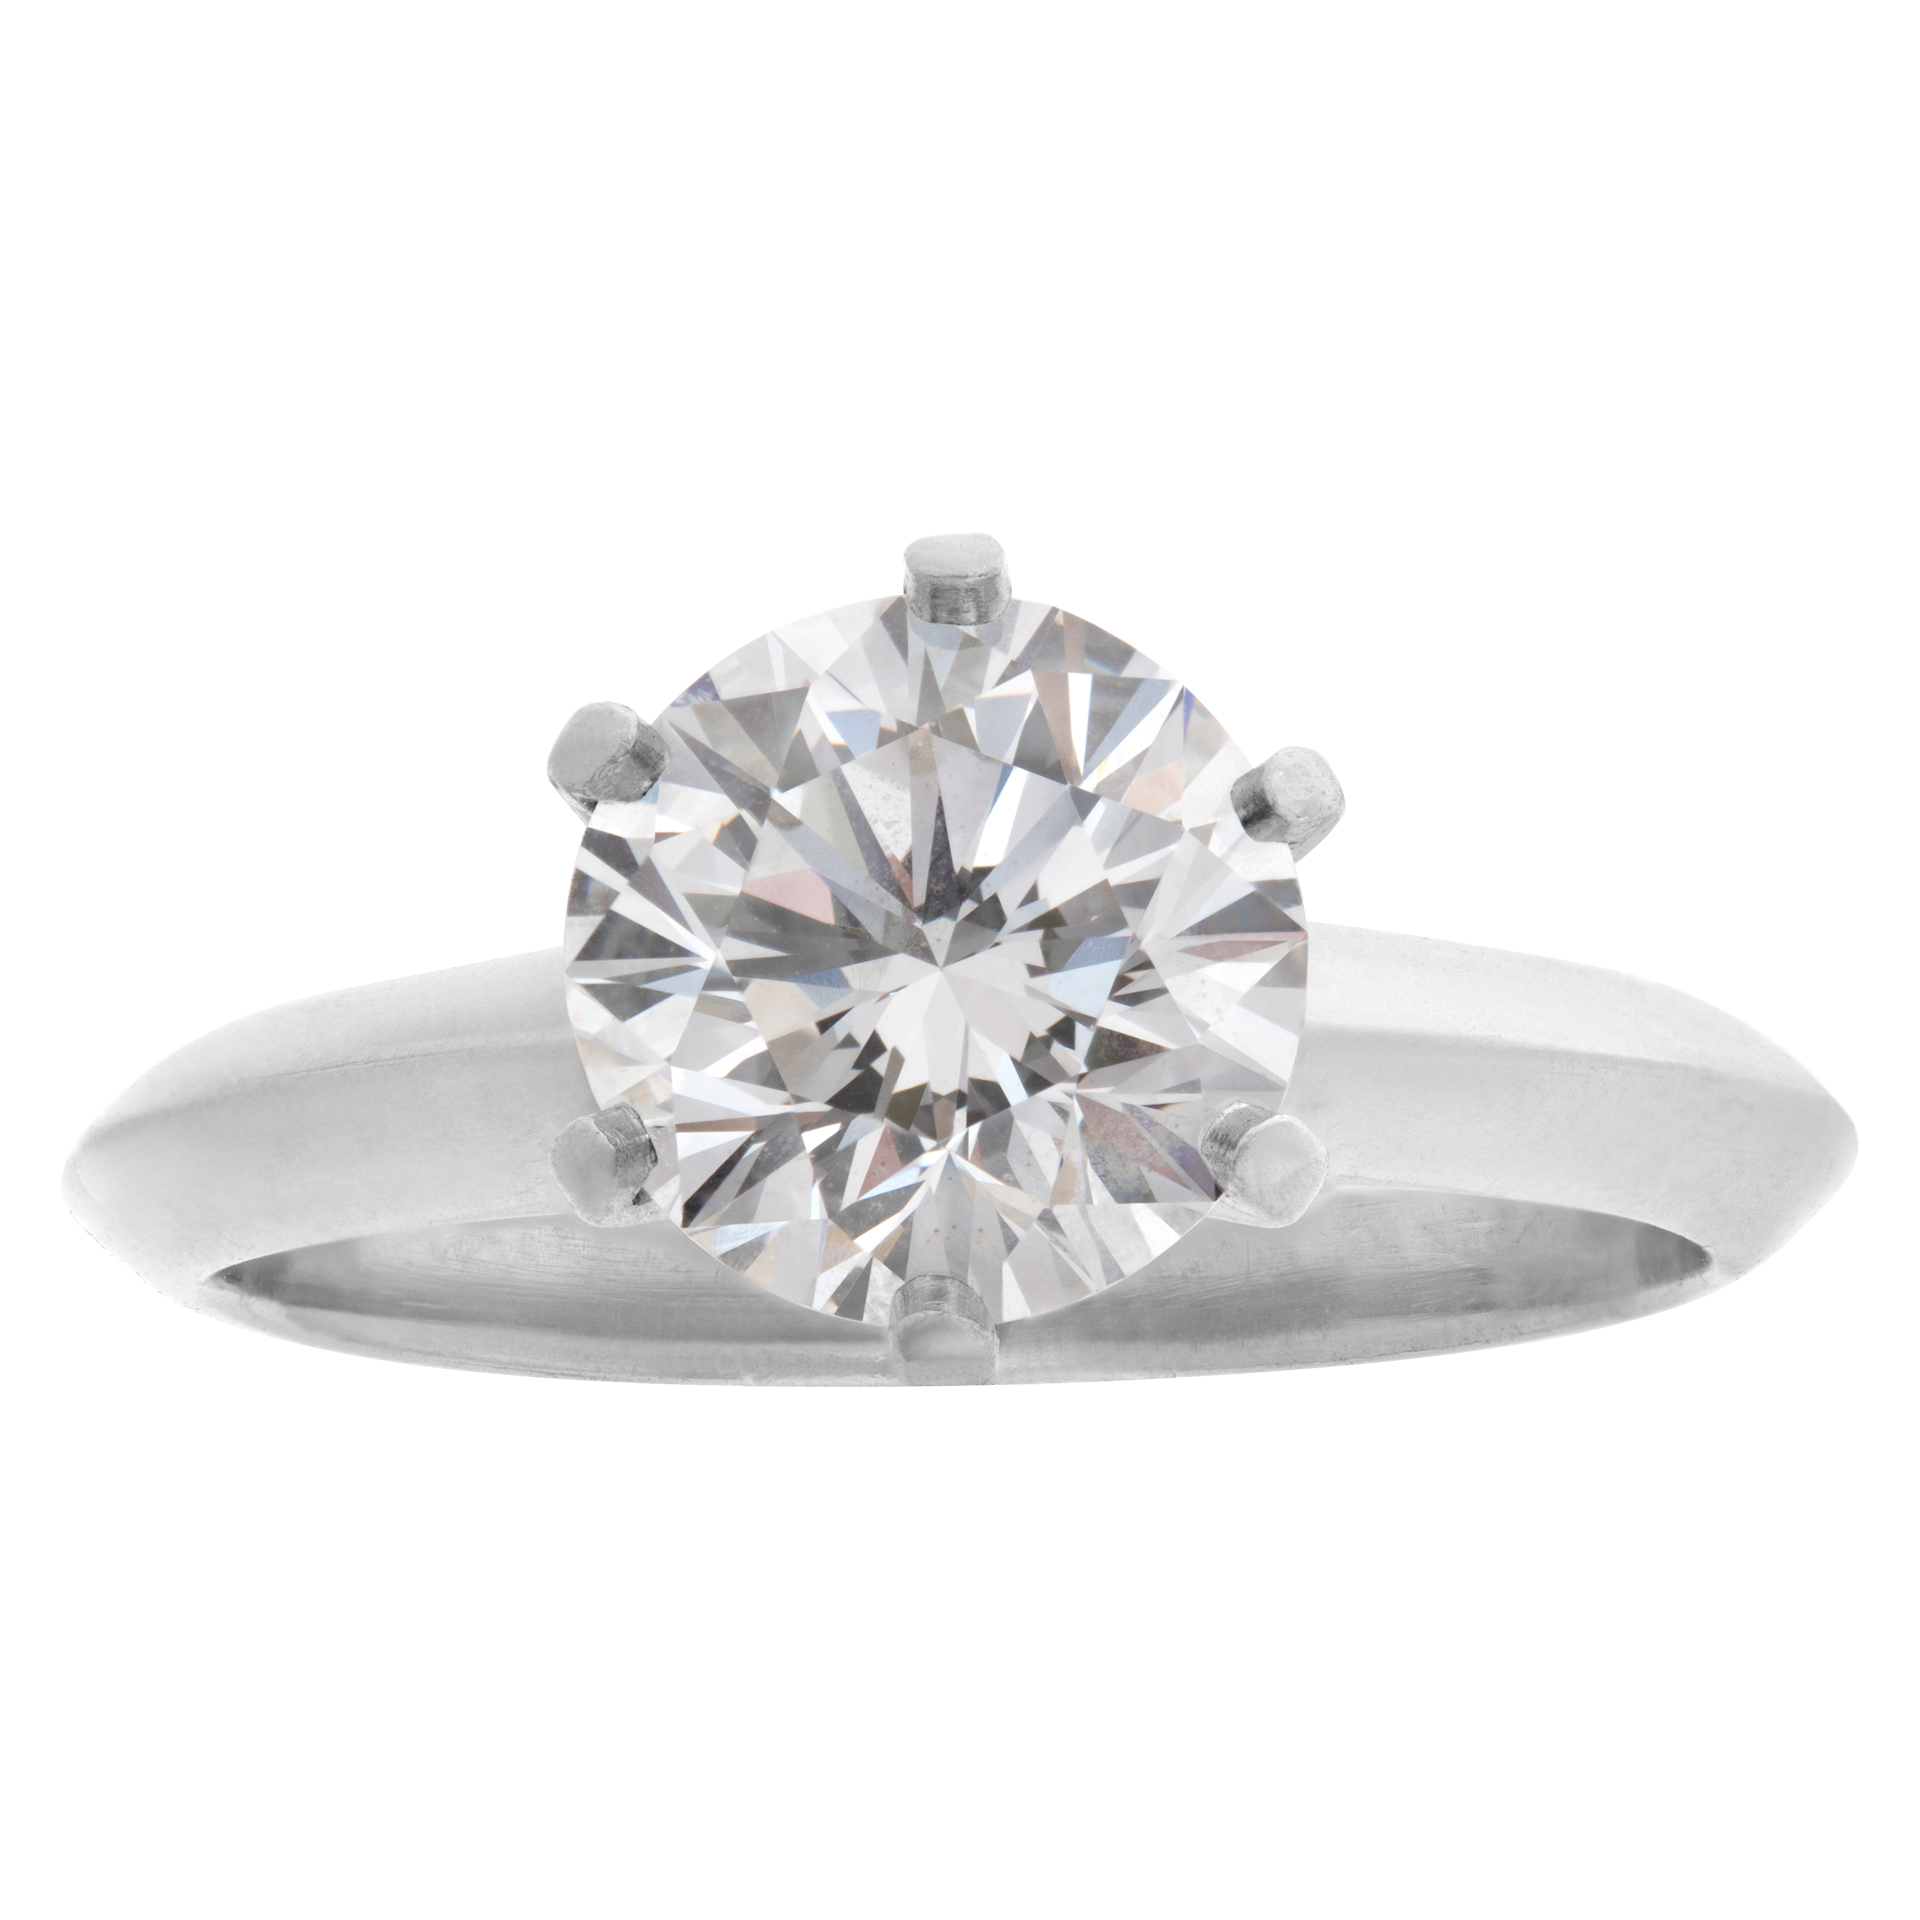 Tiffany & Co. round brilliant diamond 1.53 carat (E color, VVS2 clarity) ring in platinum image 1